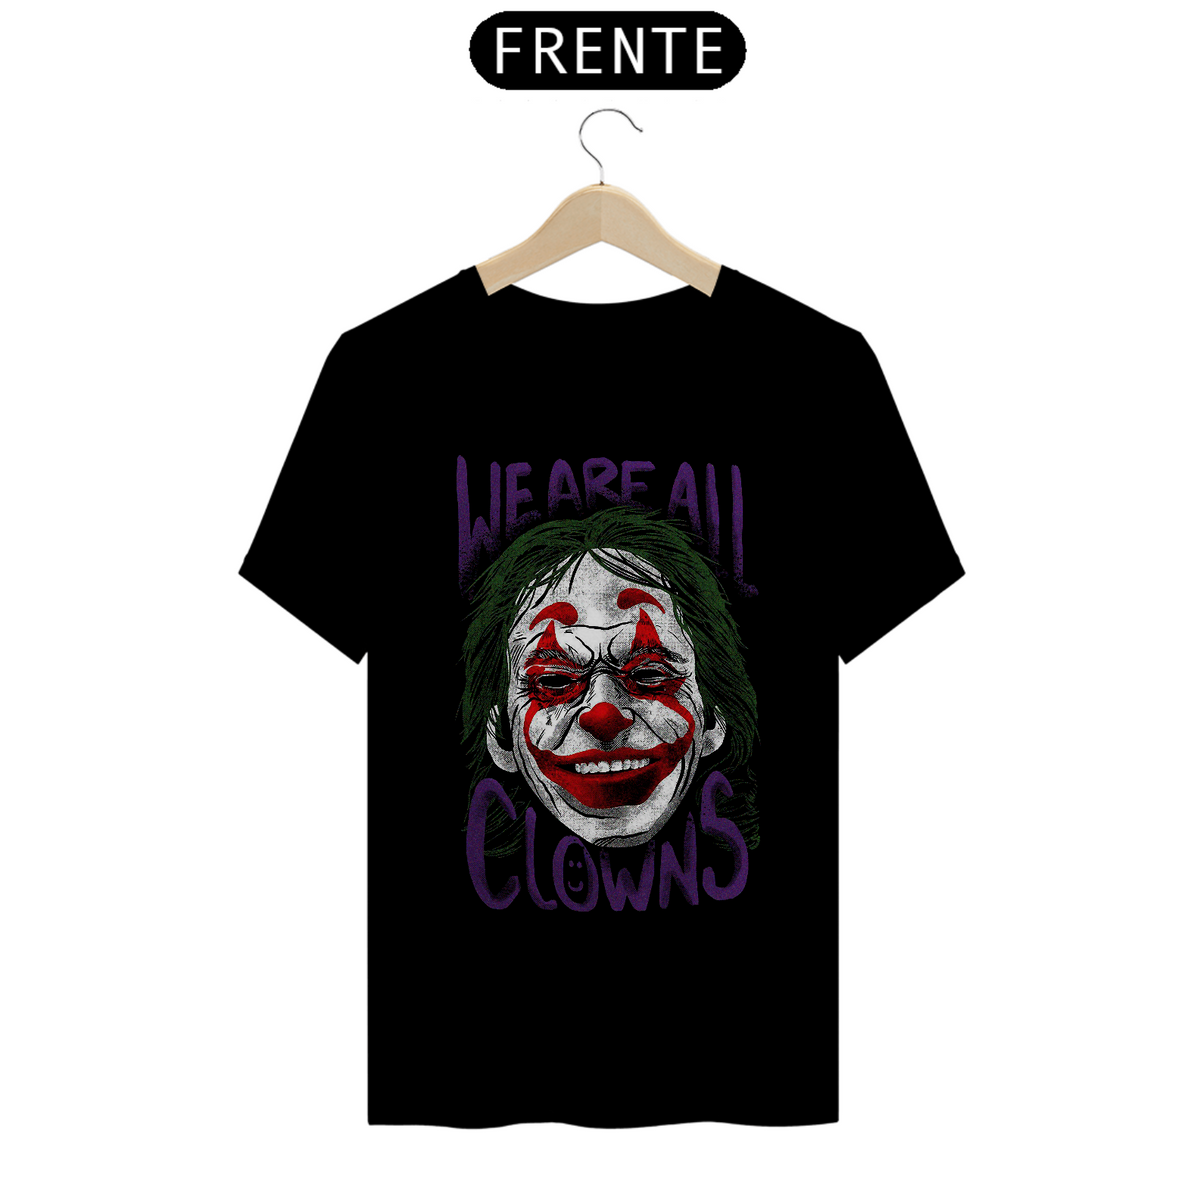 Nome do produto: T-shirt - Coringa Lie Are All Clowns